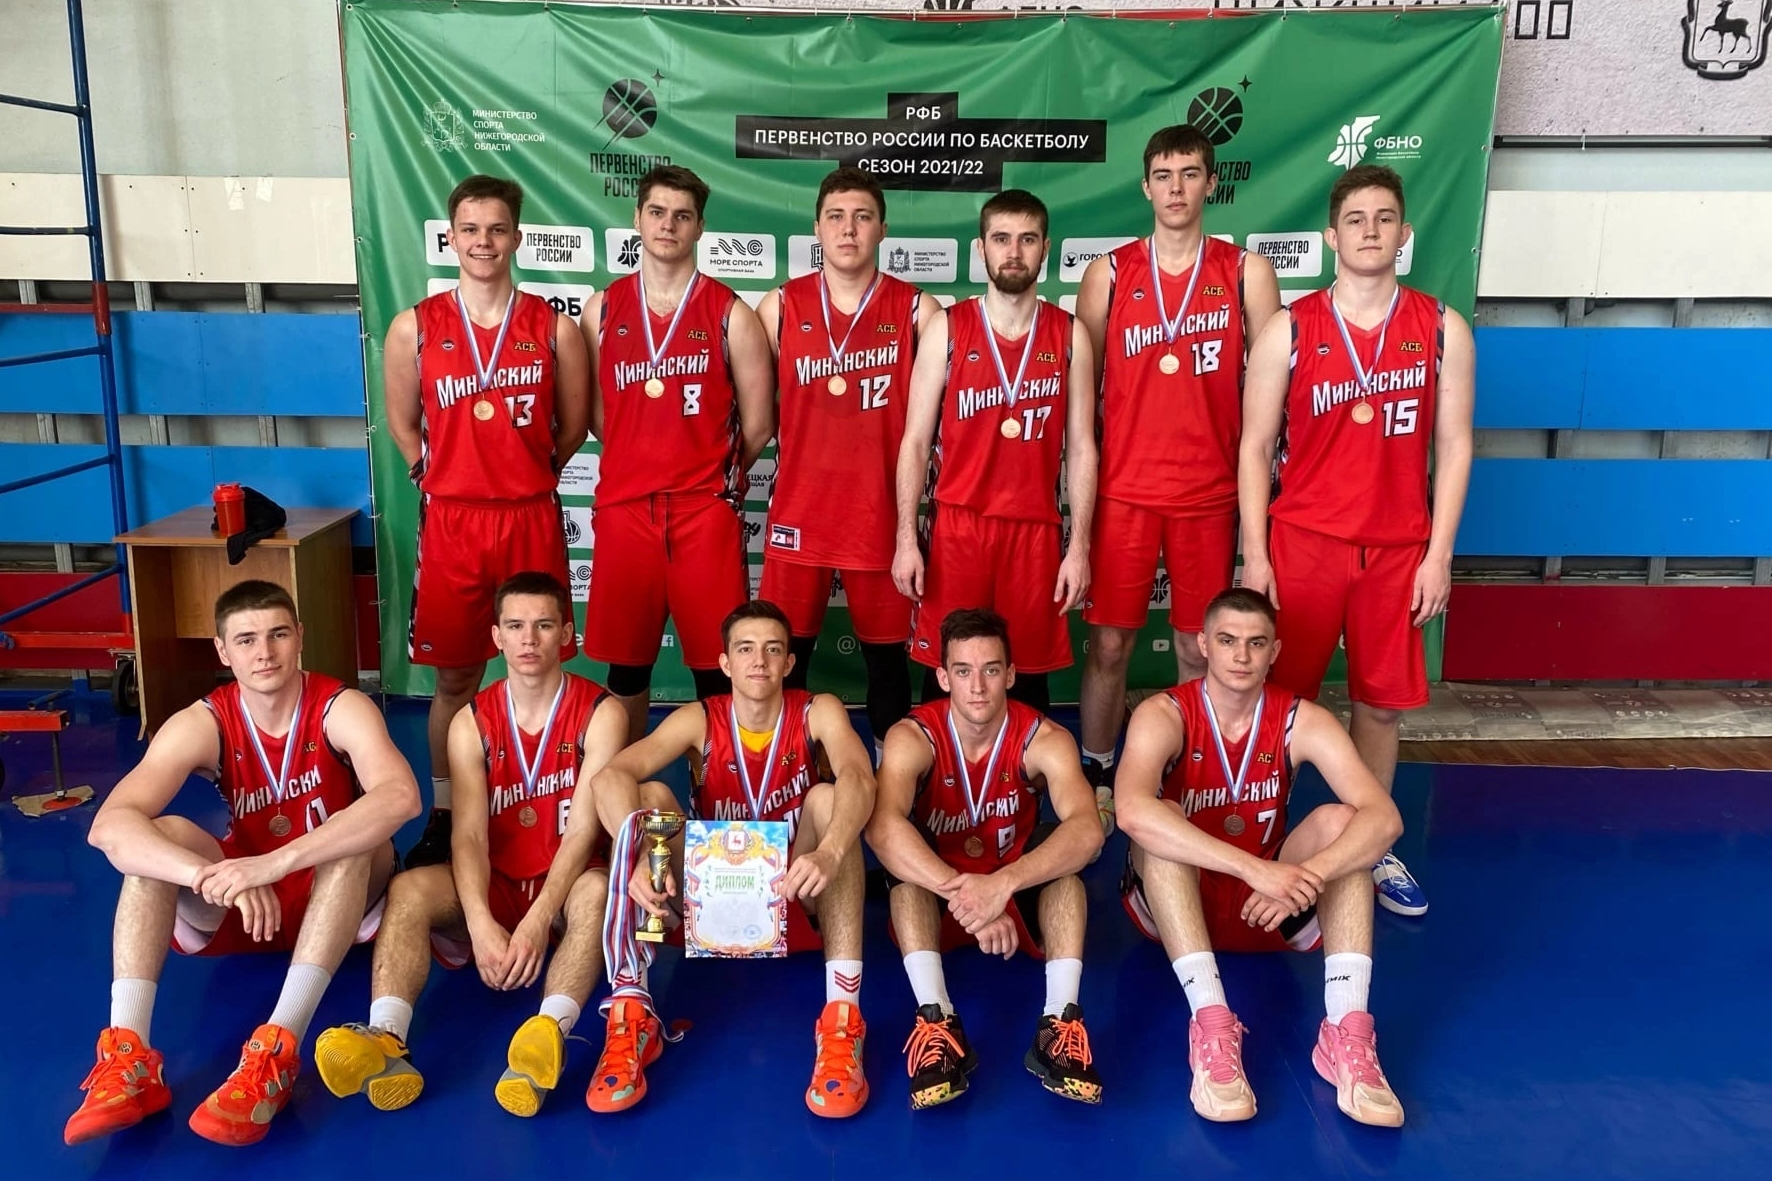 Команда Мининского стала призером соревнований по баскетболу